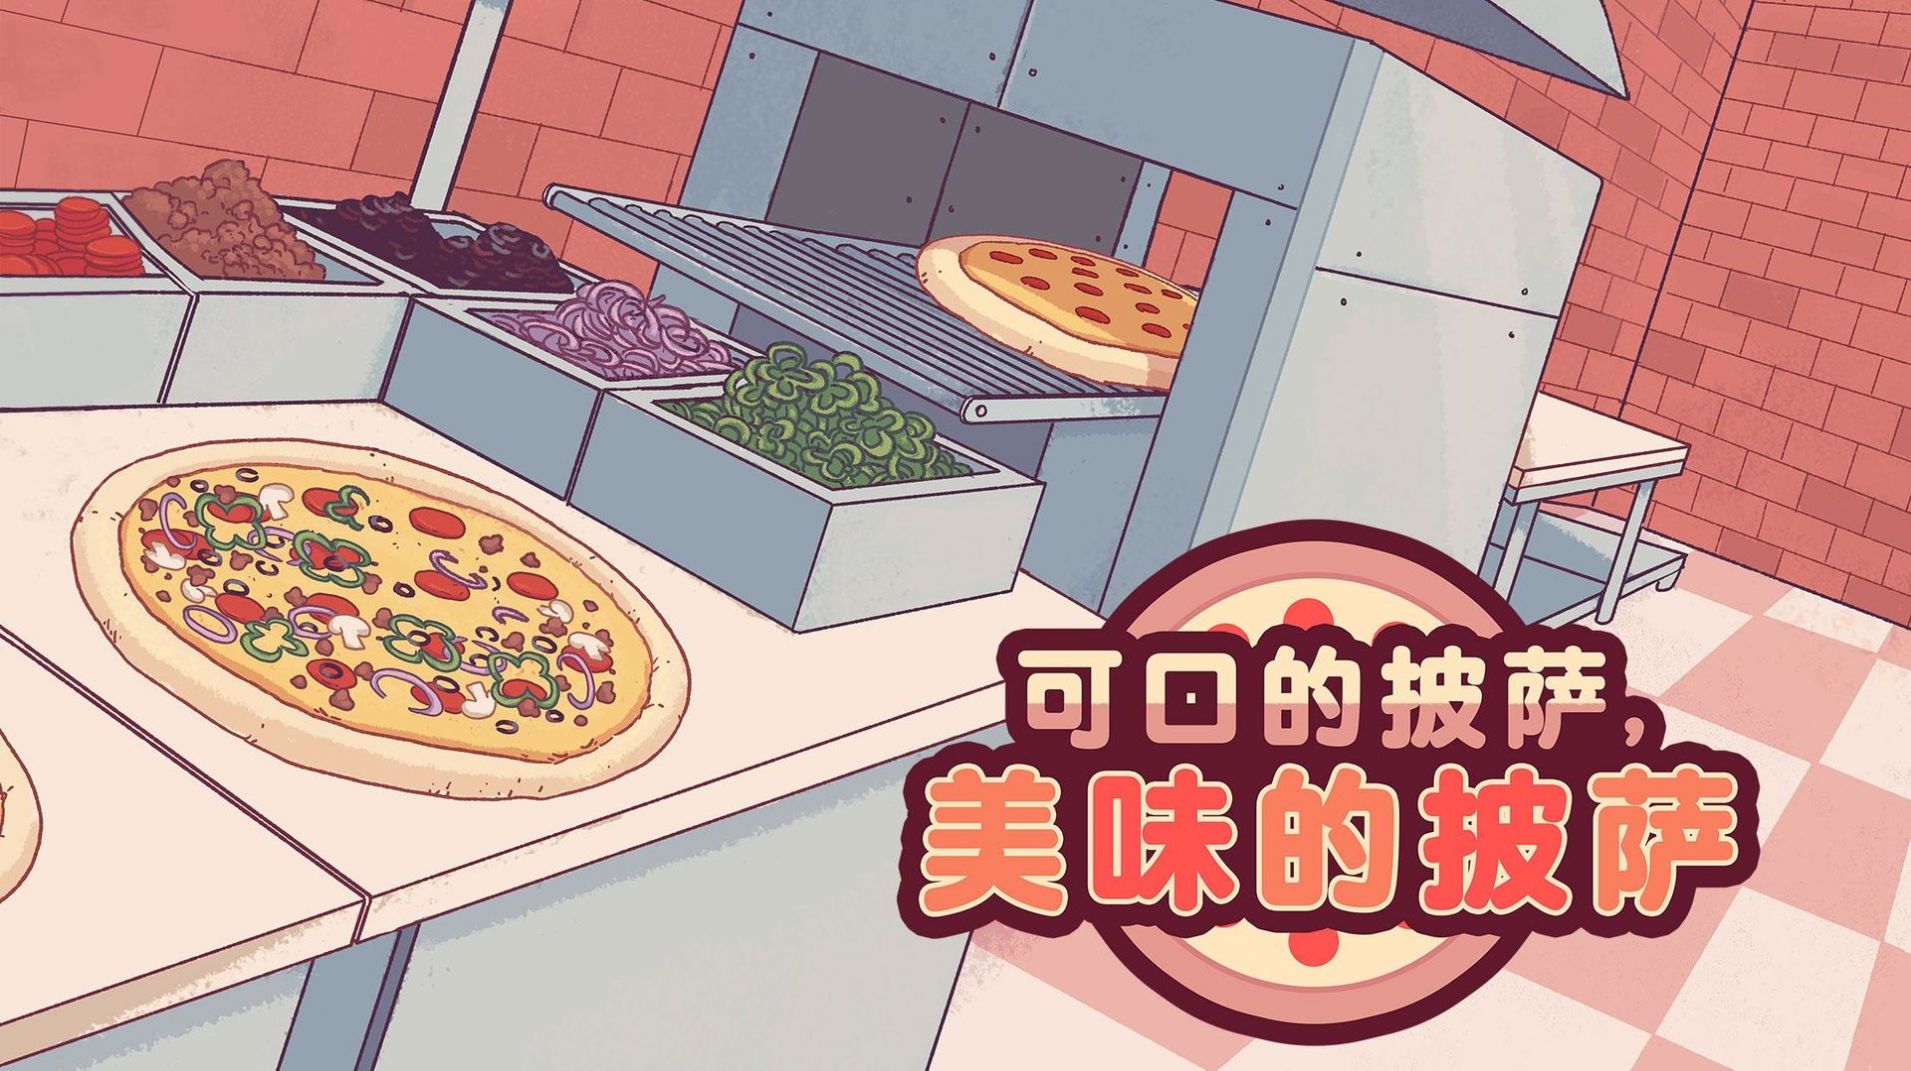 披萨披萨下载安装中文版-披萨下载中文版下载最新版本-可口的披萨,美味的披萨下载安装